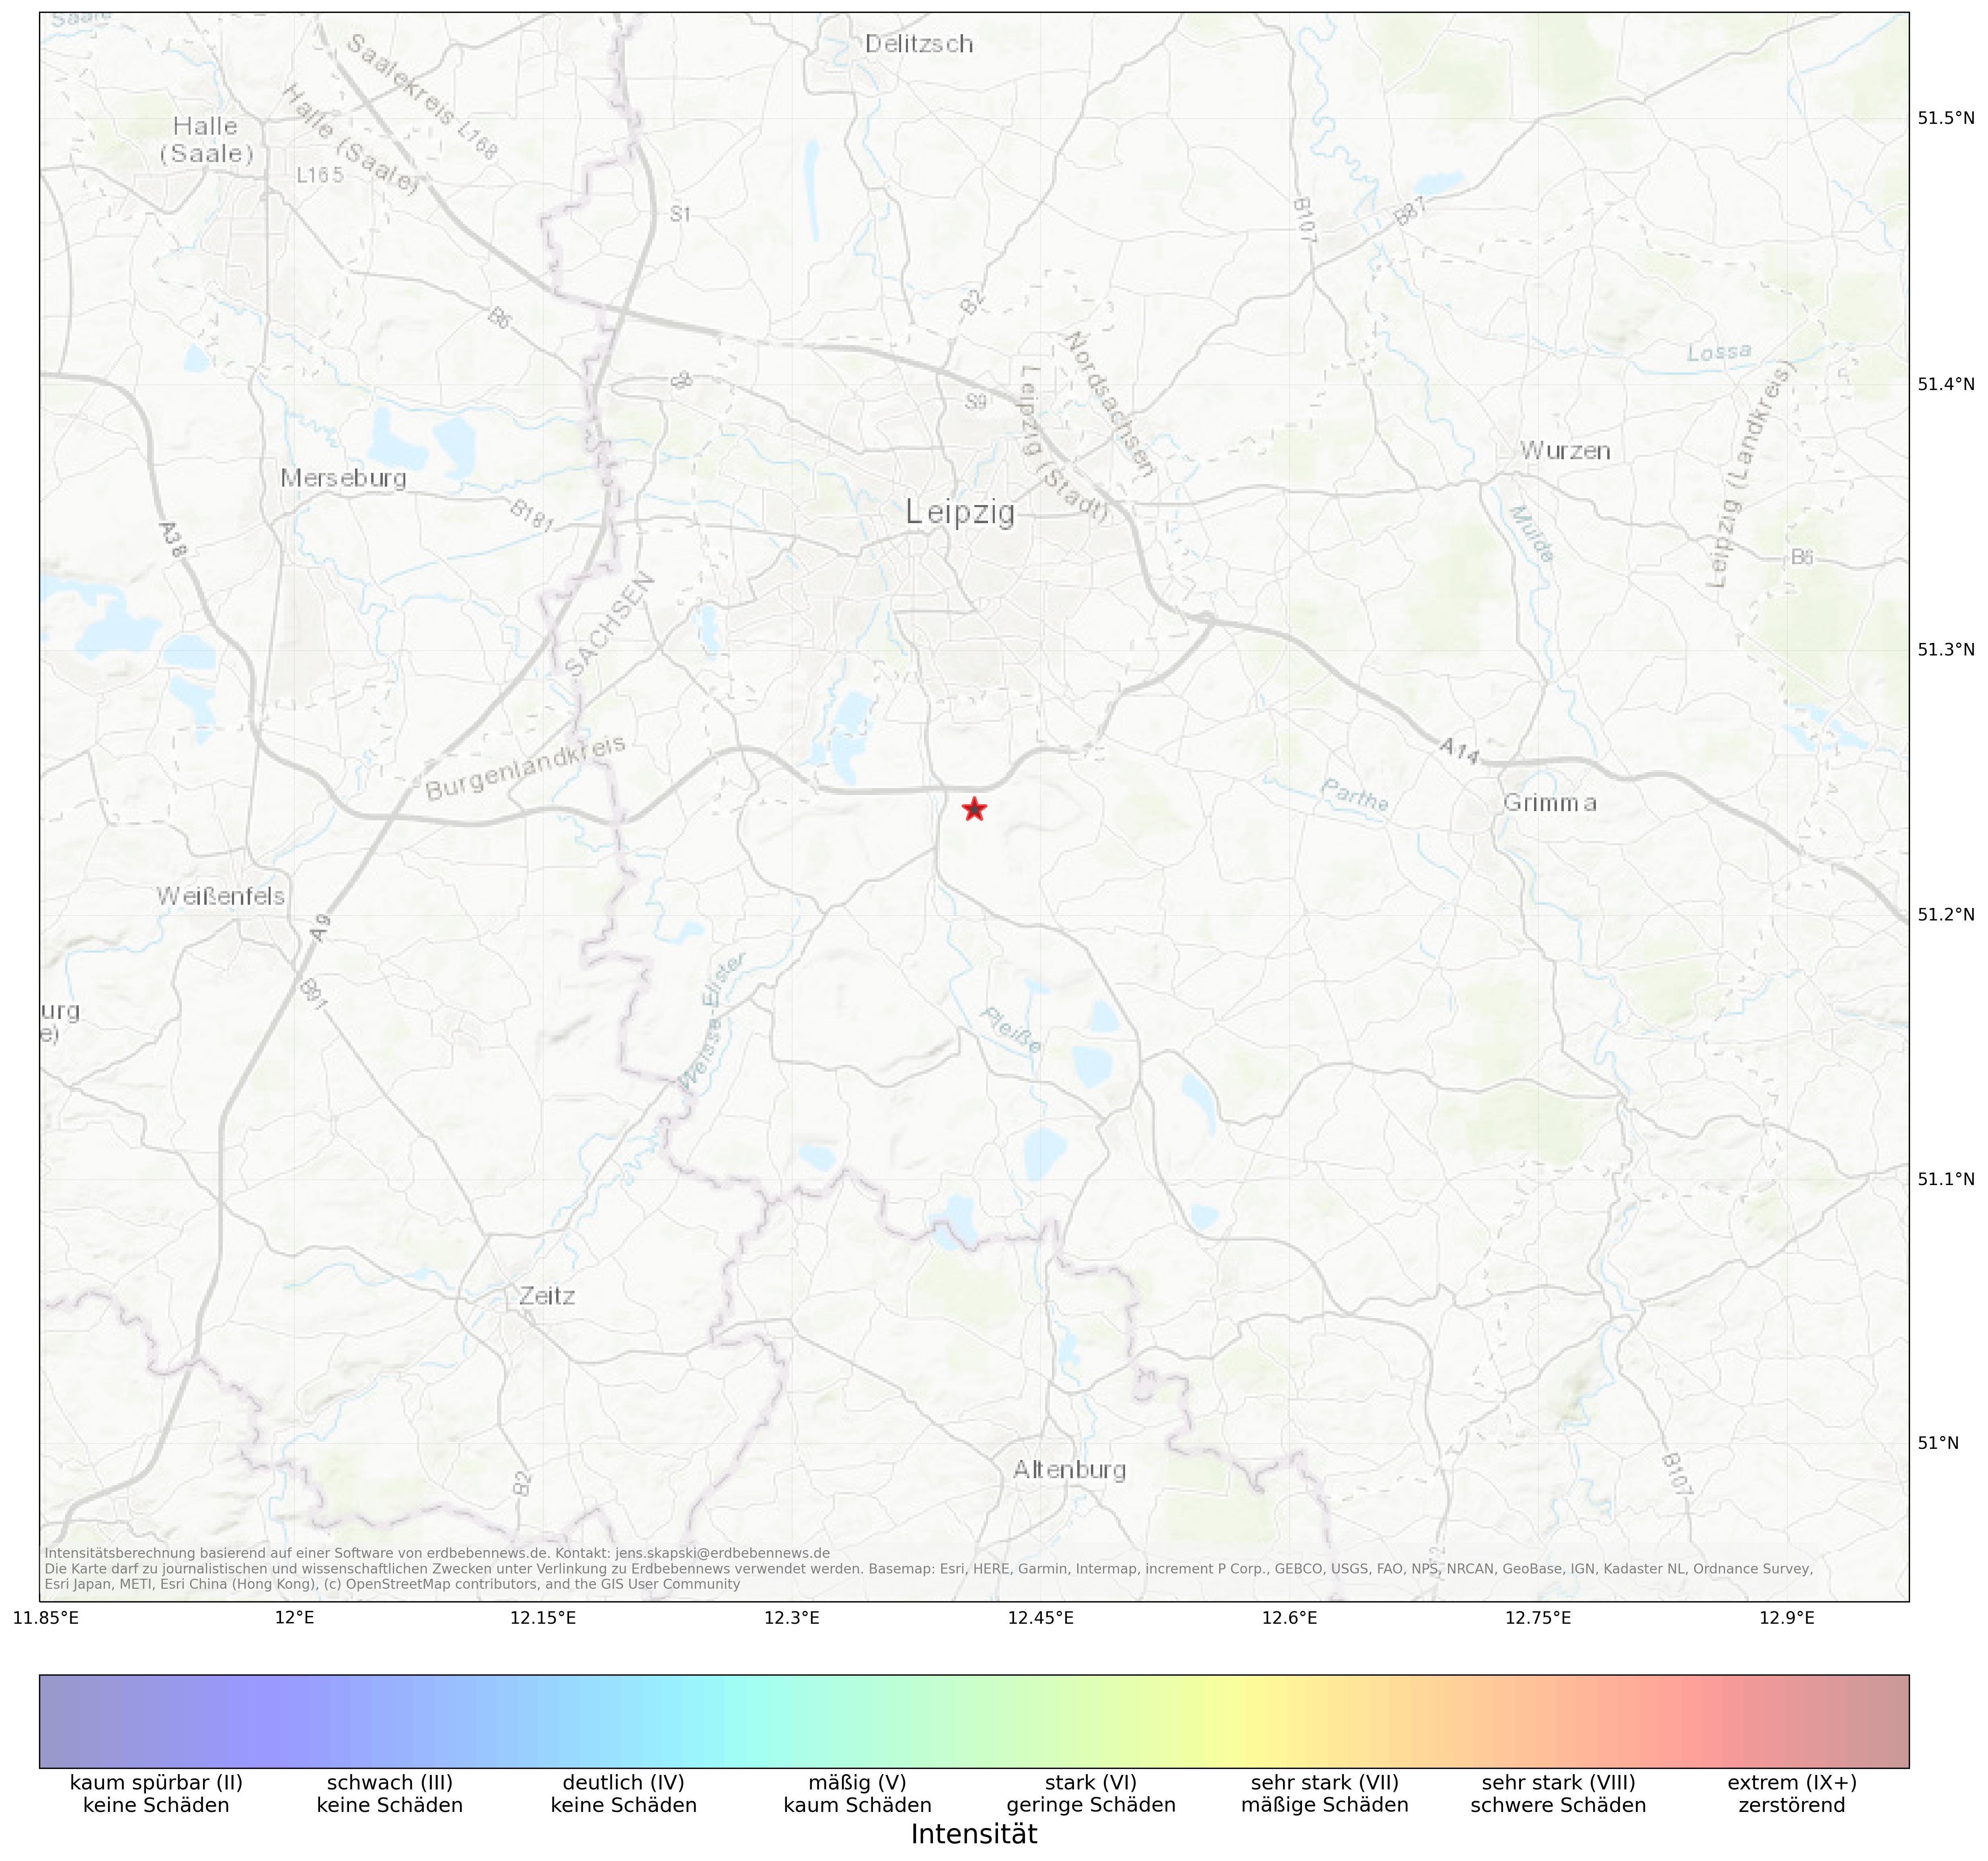 Berechnete Intensität (ShakeMap) des Erdbebens der Stärke 2.1 am 20. April, 22:30 in Deutschland